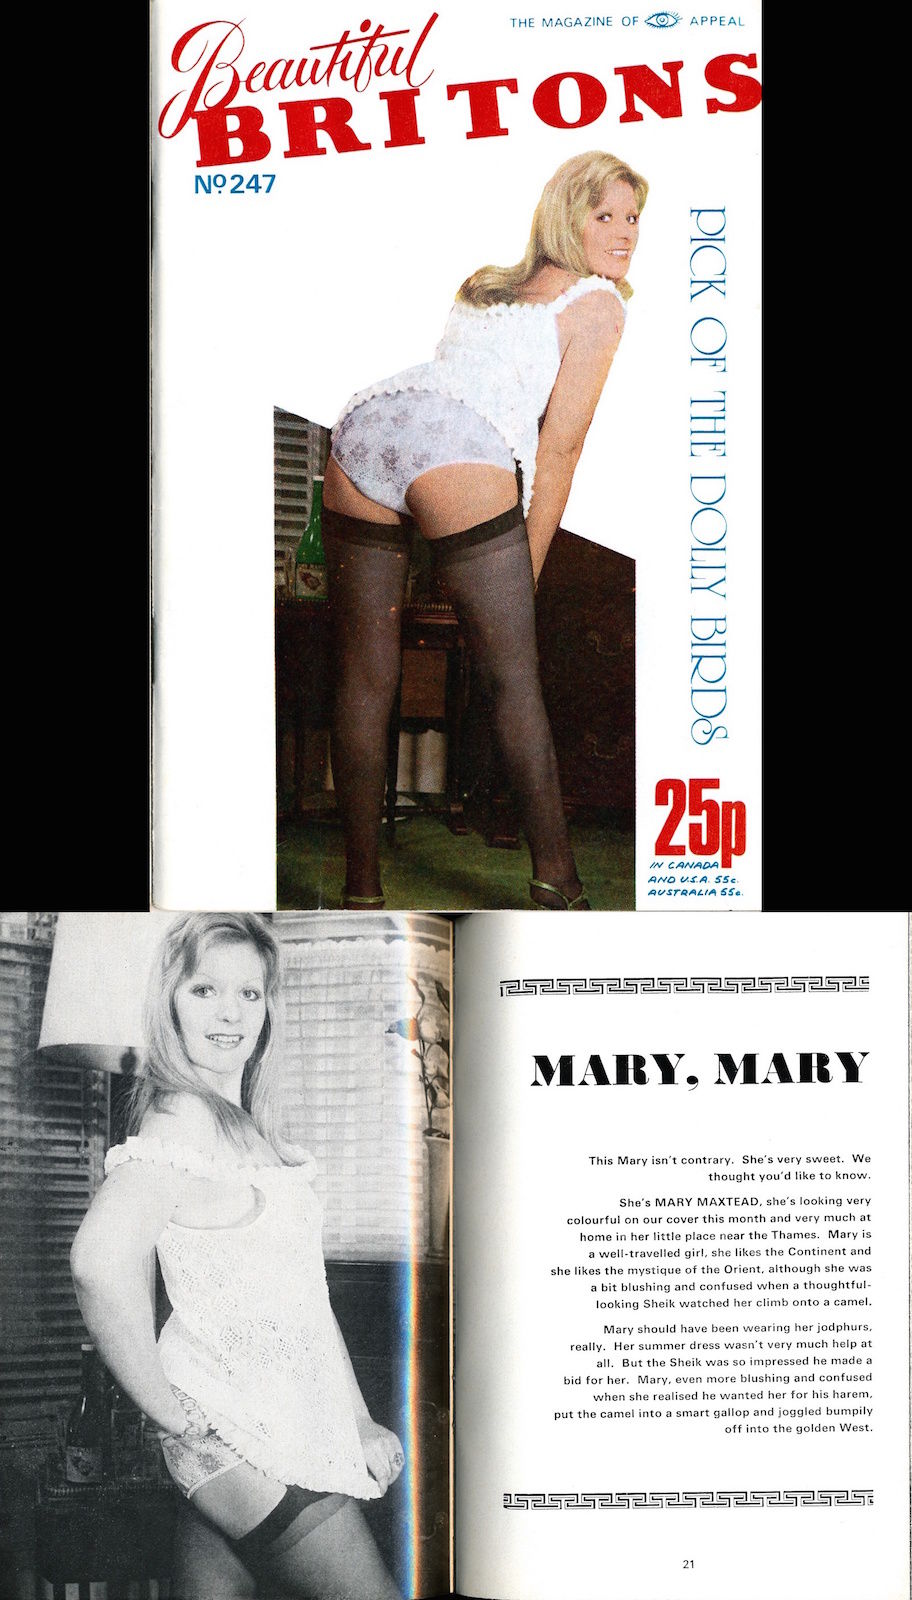 Mary mary erotic